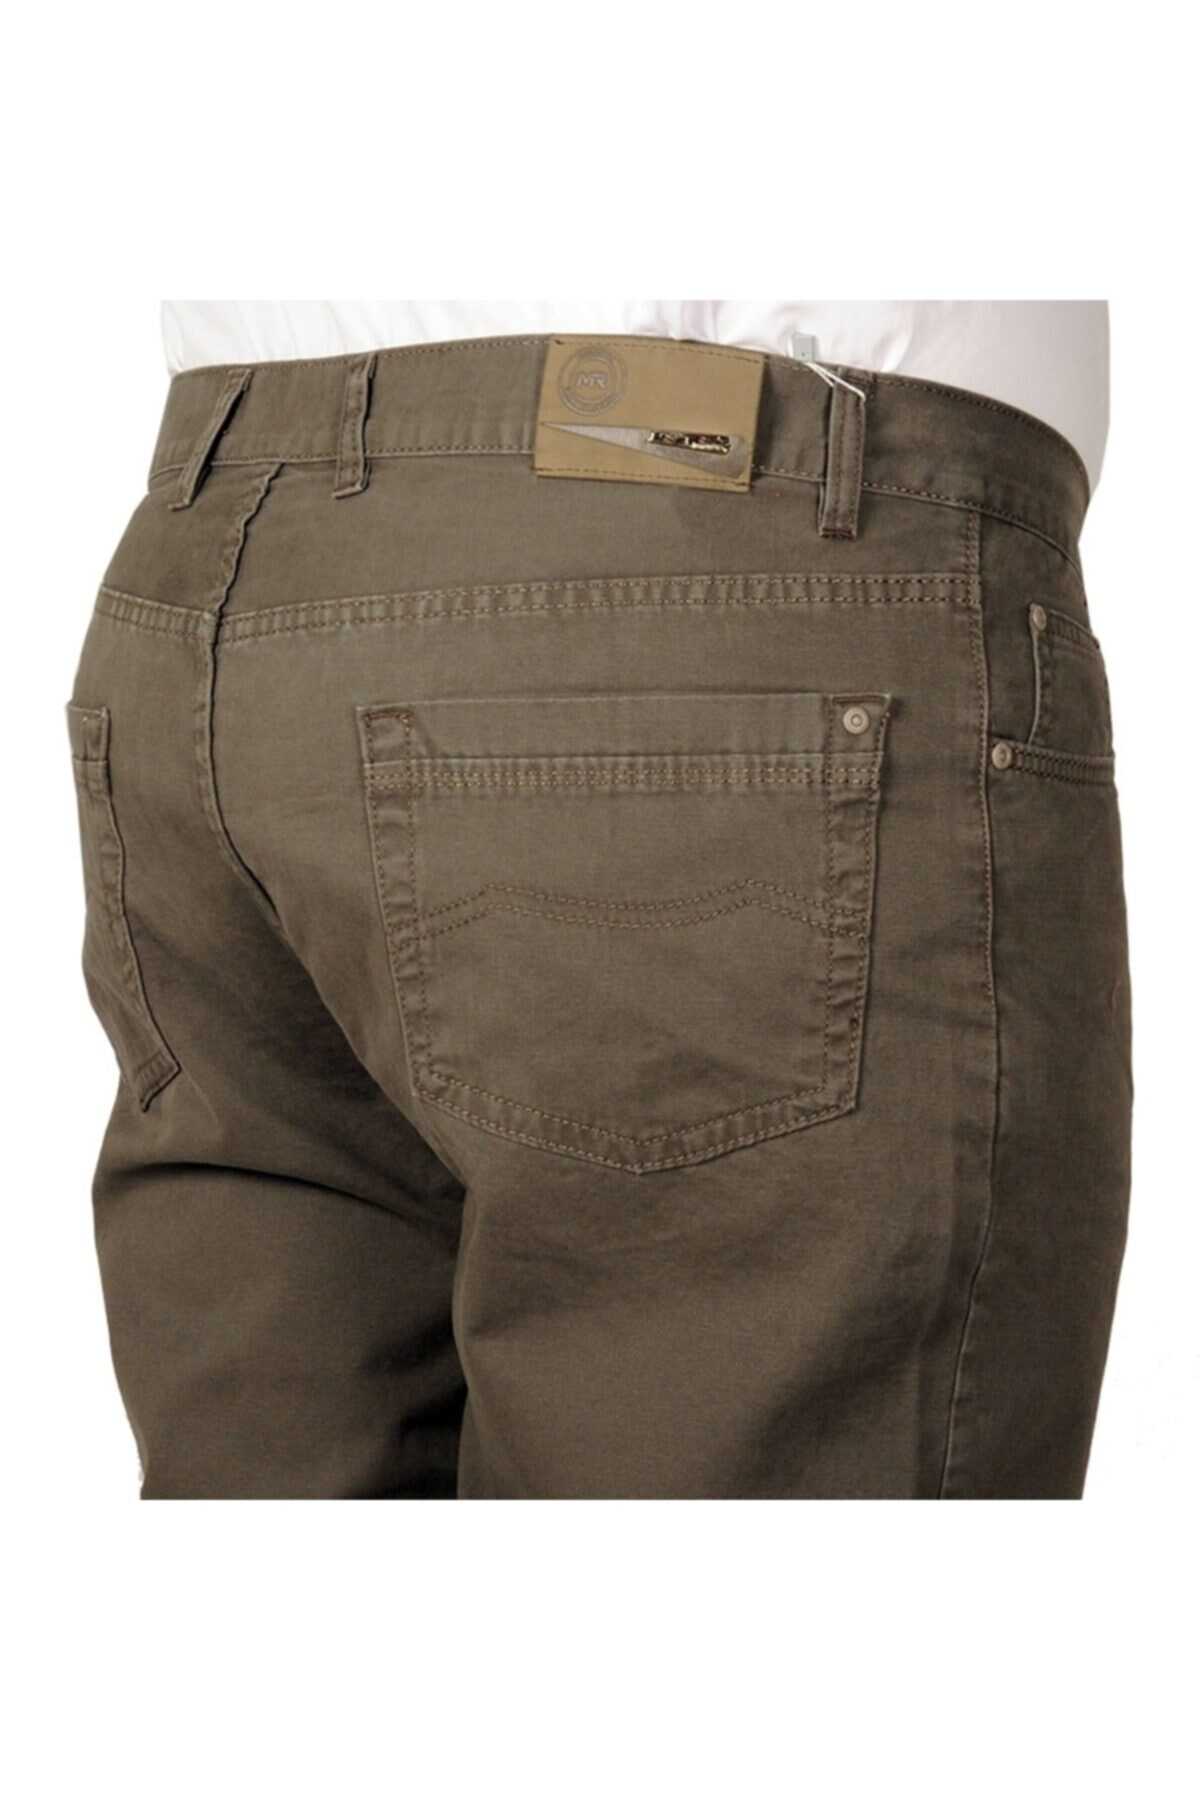 شلوار کتان سایز بزرگ جیب دار مردانه خاکی برند ModeXL 